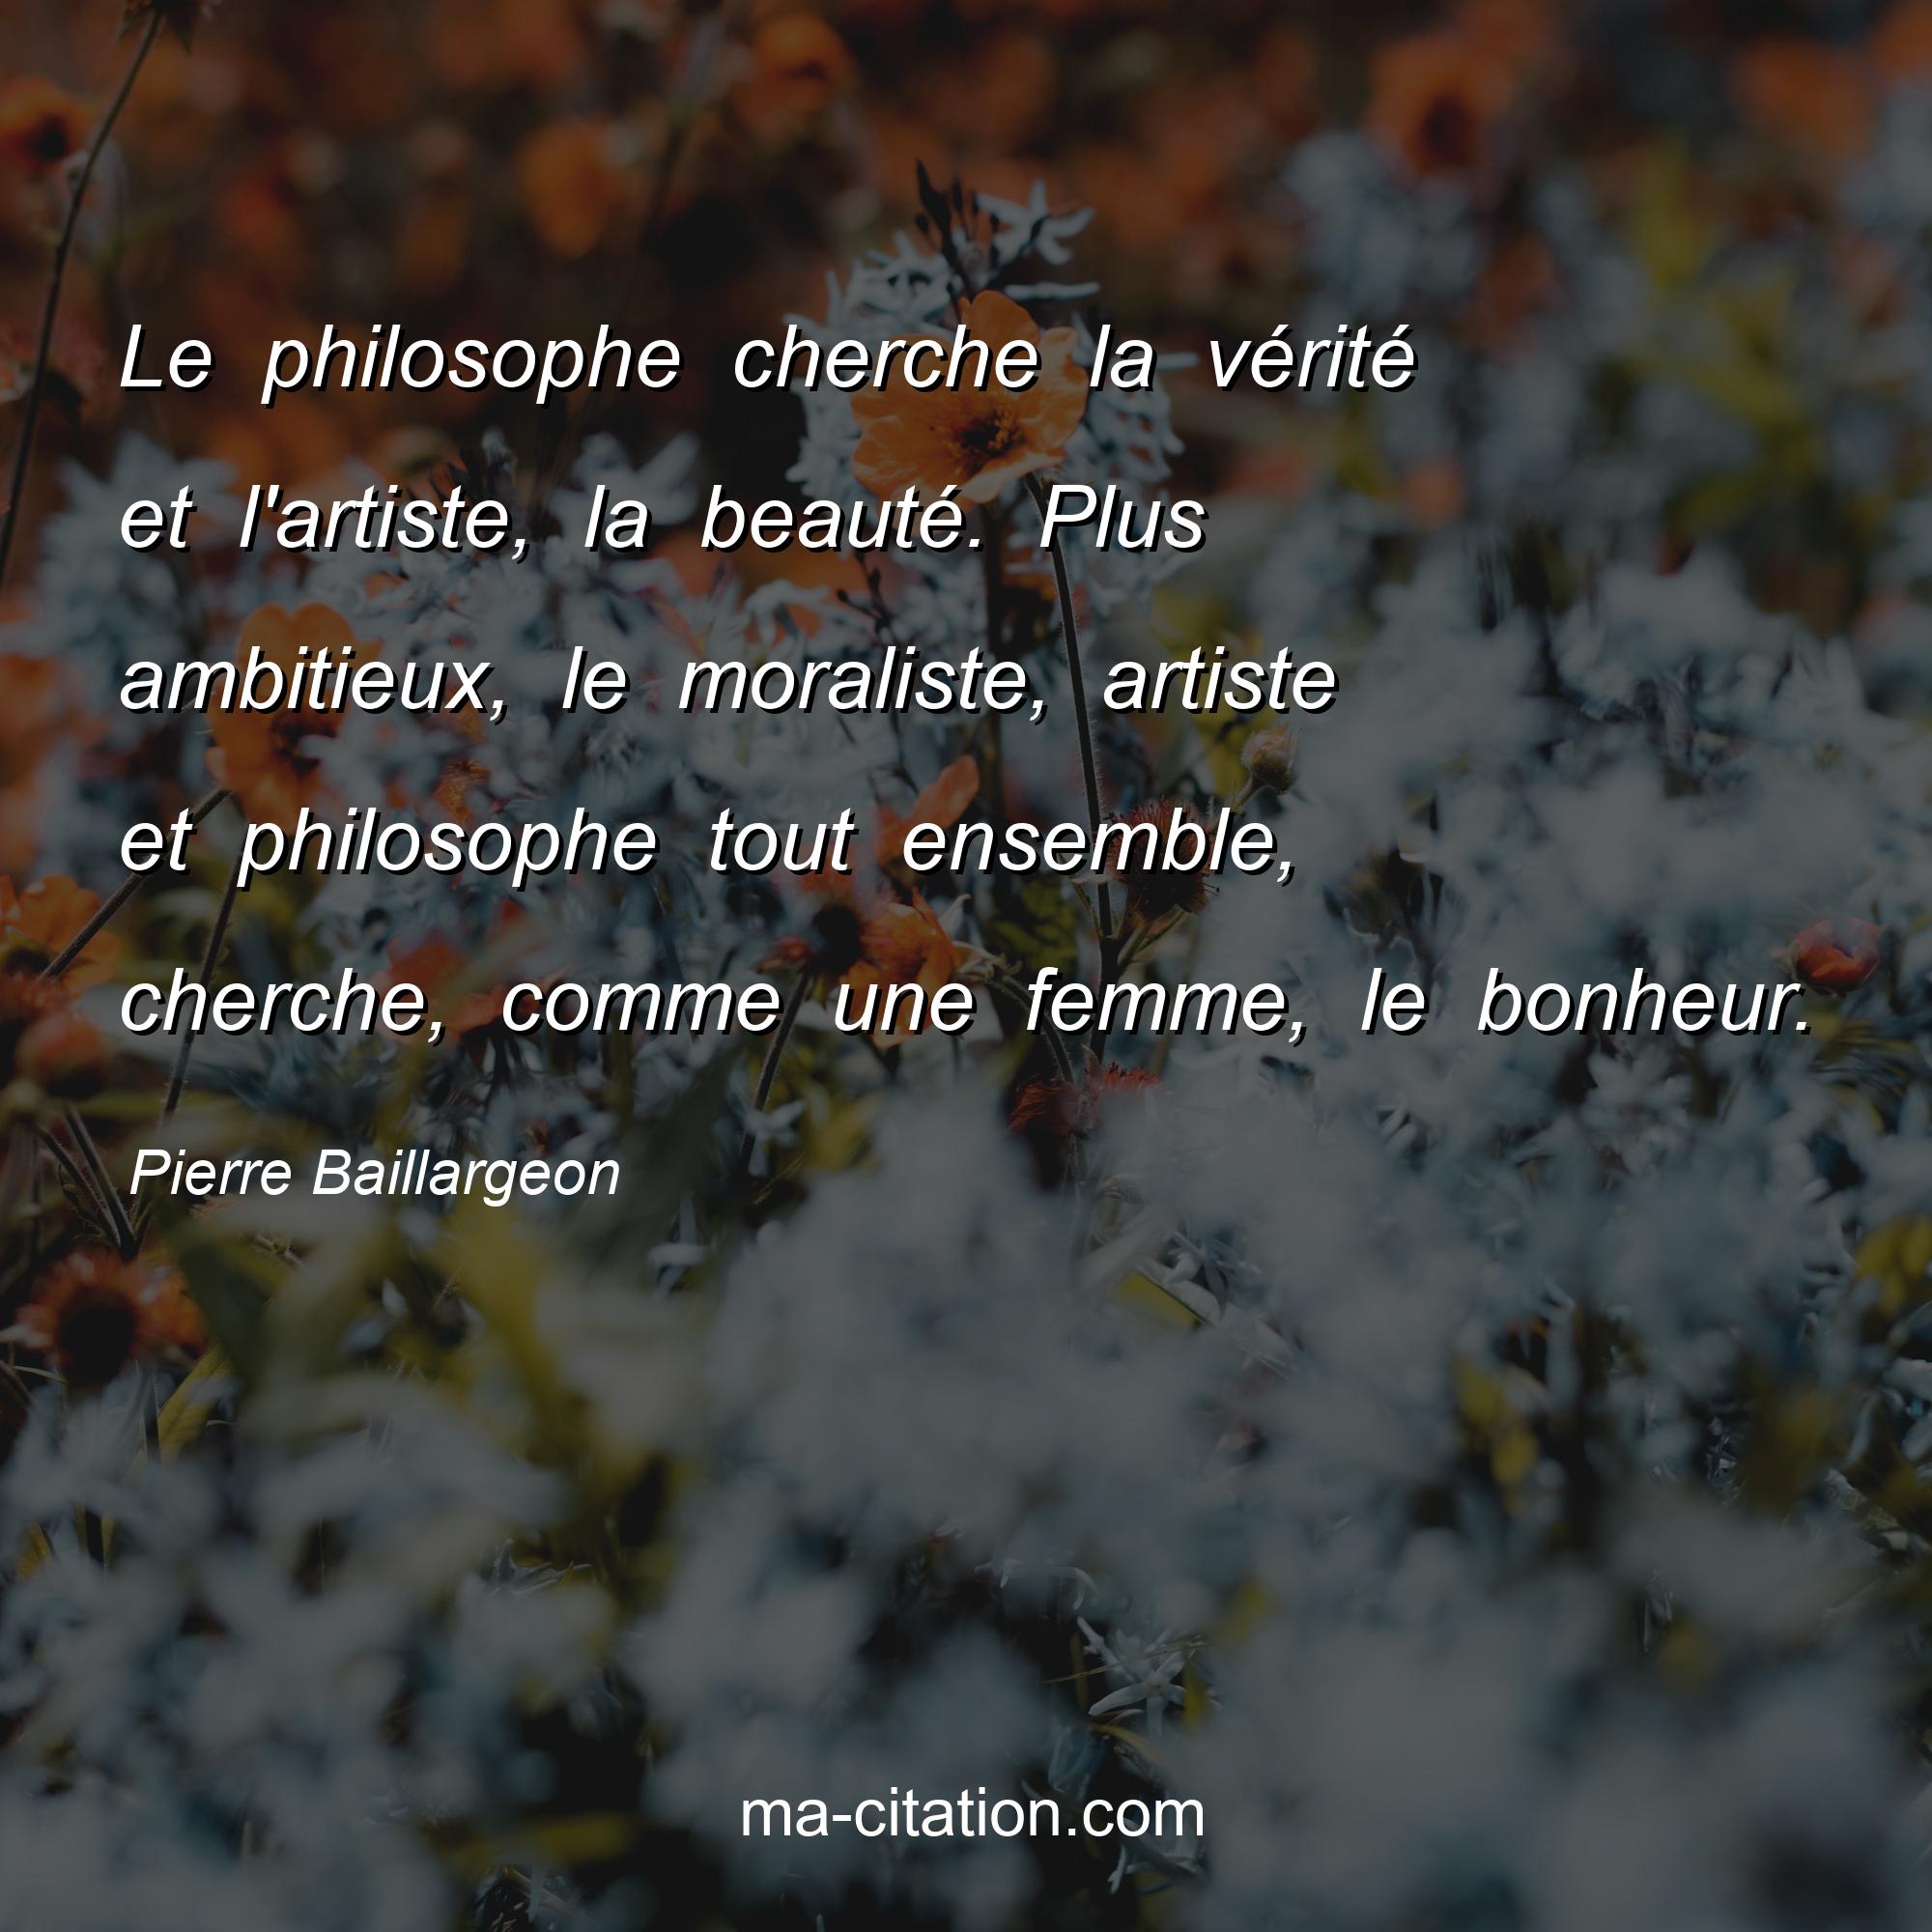 Pierre Baillargeon : Le philosophe cherche la vérité et l'artiste, la beauté. Plus ambitieux, le moraliste, artiste et philosophe tout ensemble, cherche, comme une femme, le bonheur.